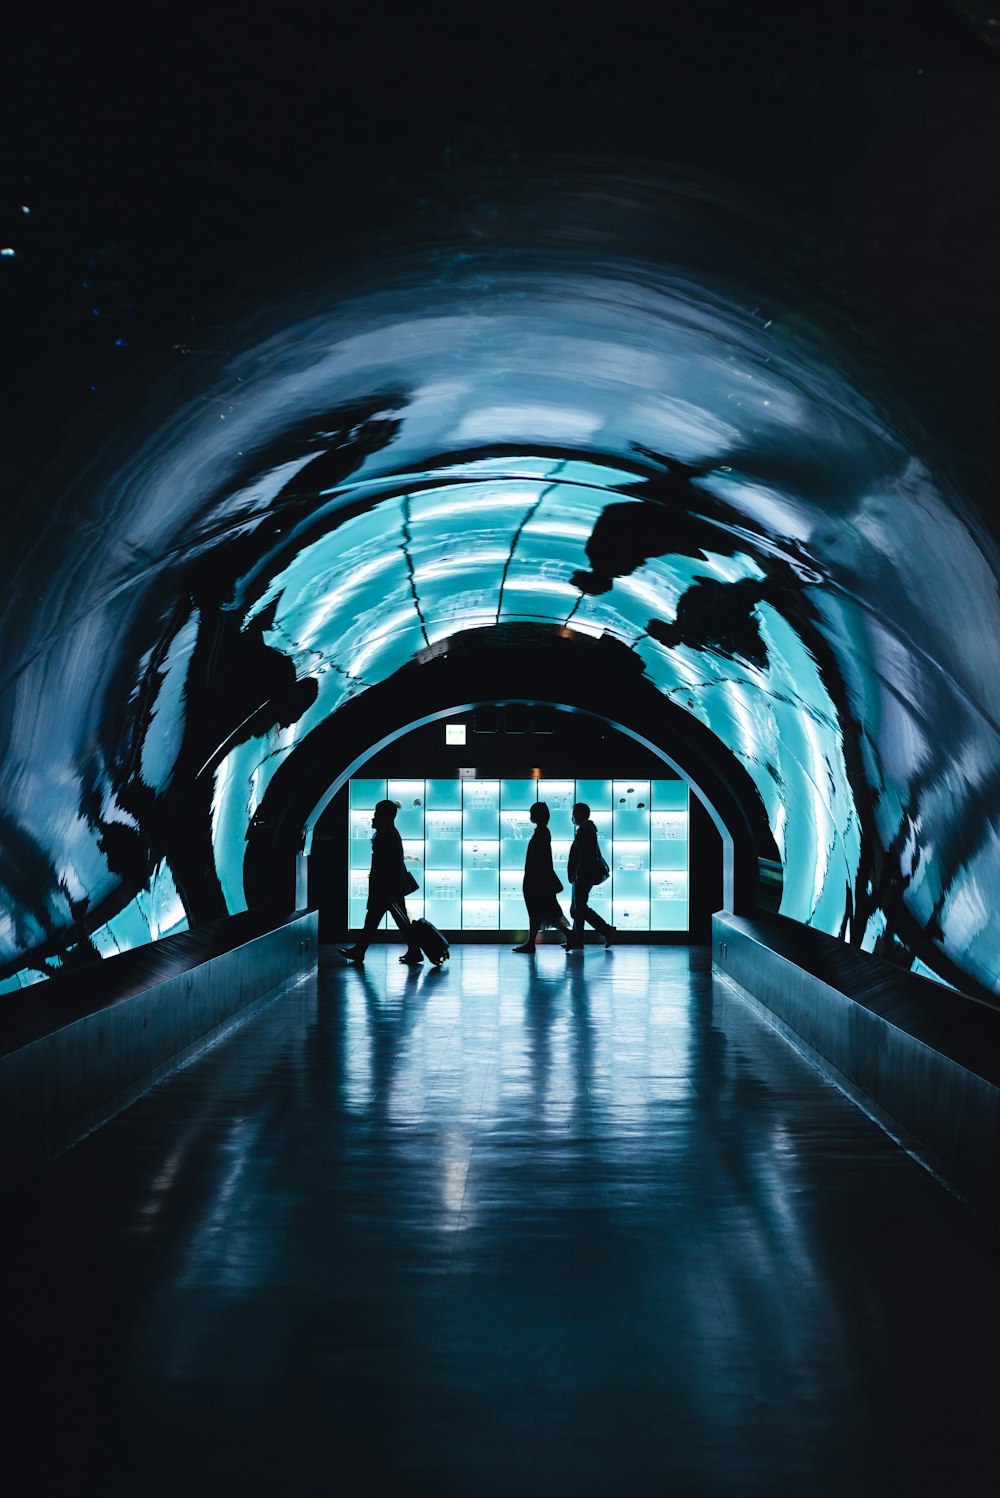 silhouette di tre persone che camminano vicino al tunnel